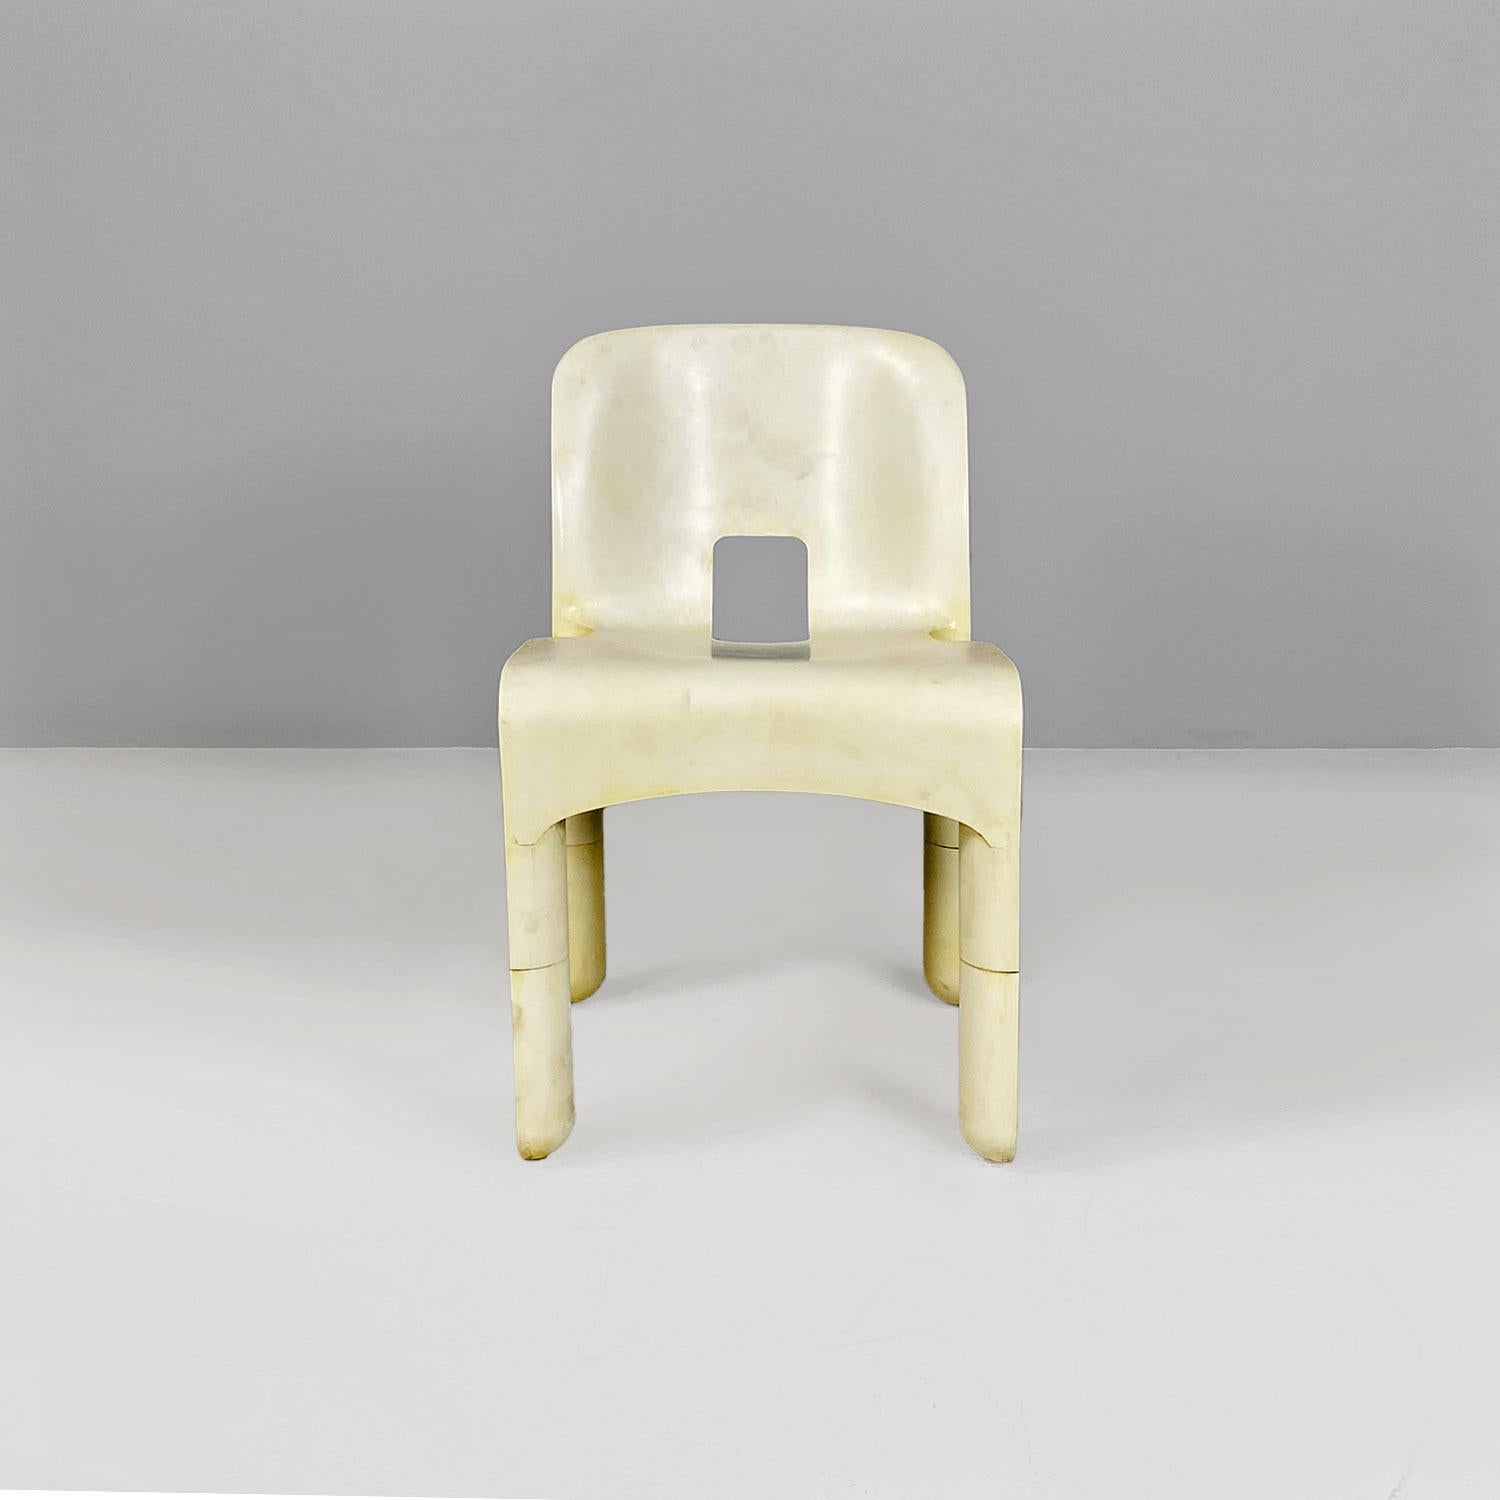 Fin du 20e siècle Chaises universelles italiennes modernes 860 en plastique blanc, Joe Colombo, Kartell, 1970 en vente